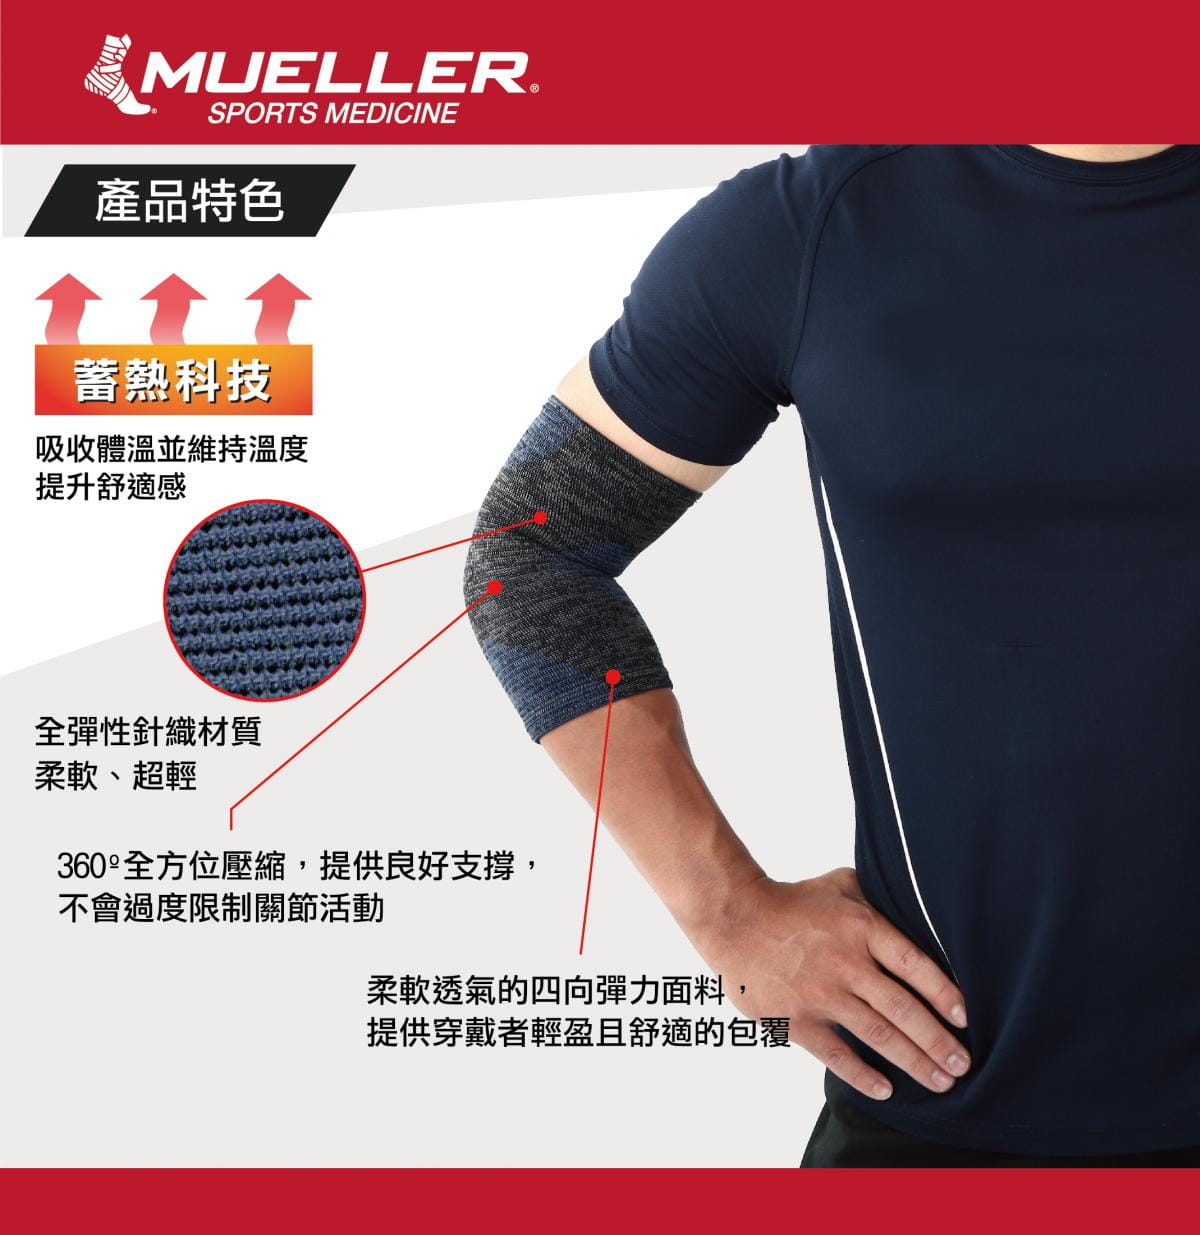 【Mueller】慕樂 FIR蓄熱科技肘關節護具 2